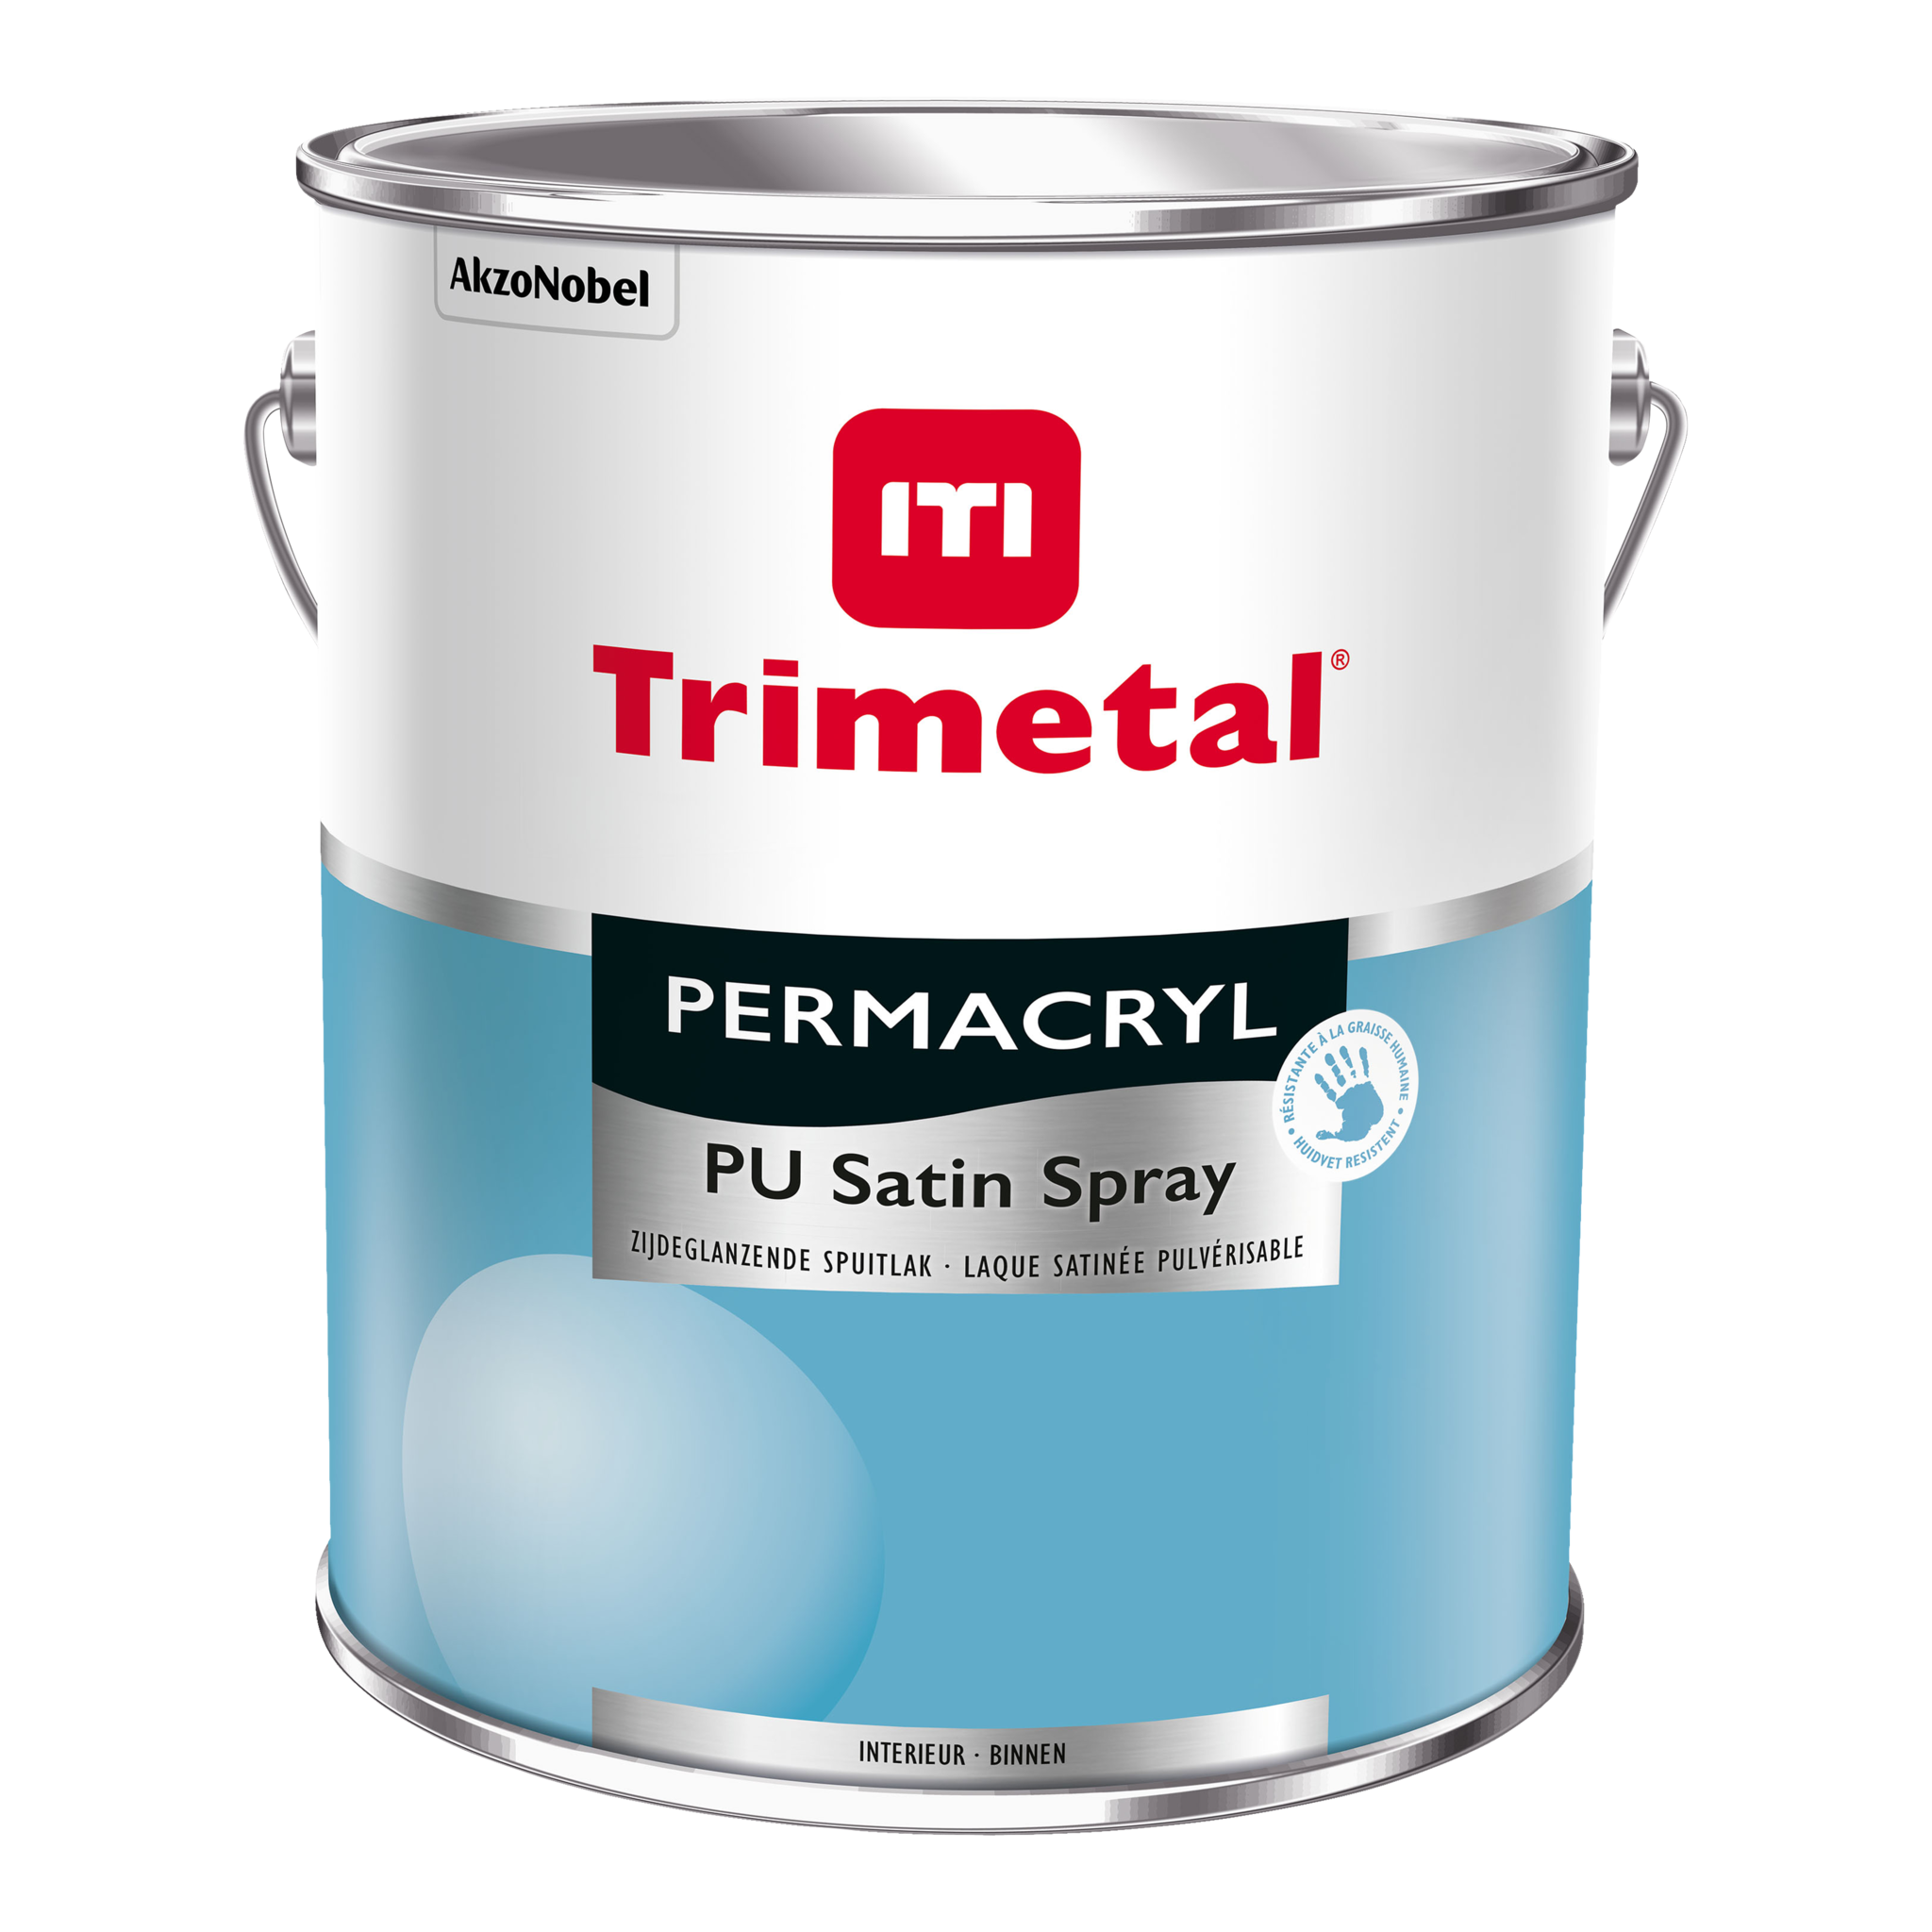 Trimetal Permacryl Pu Satin Spray 2,5 Liter